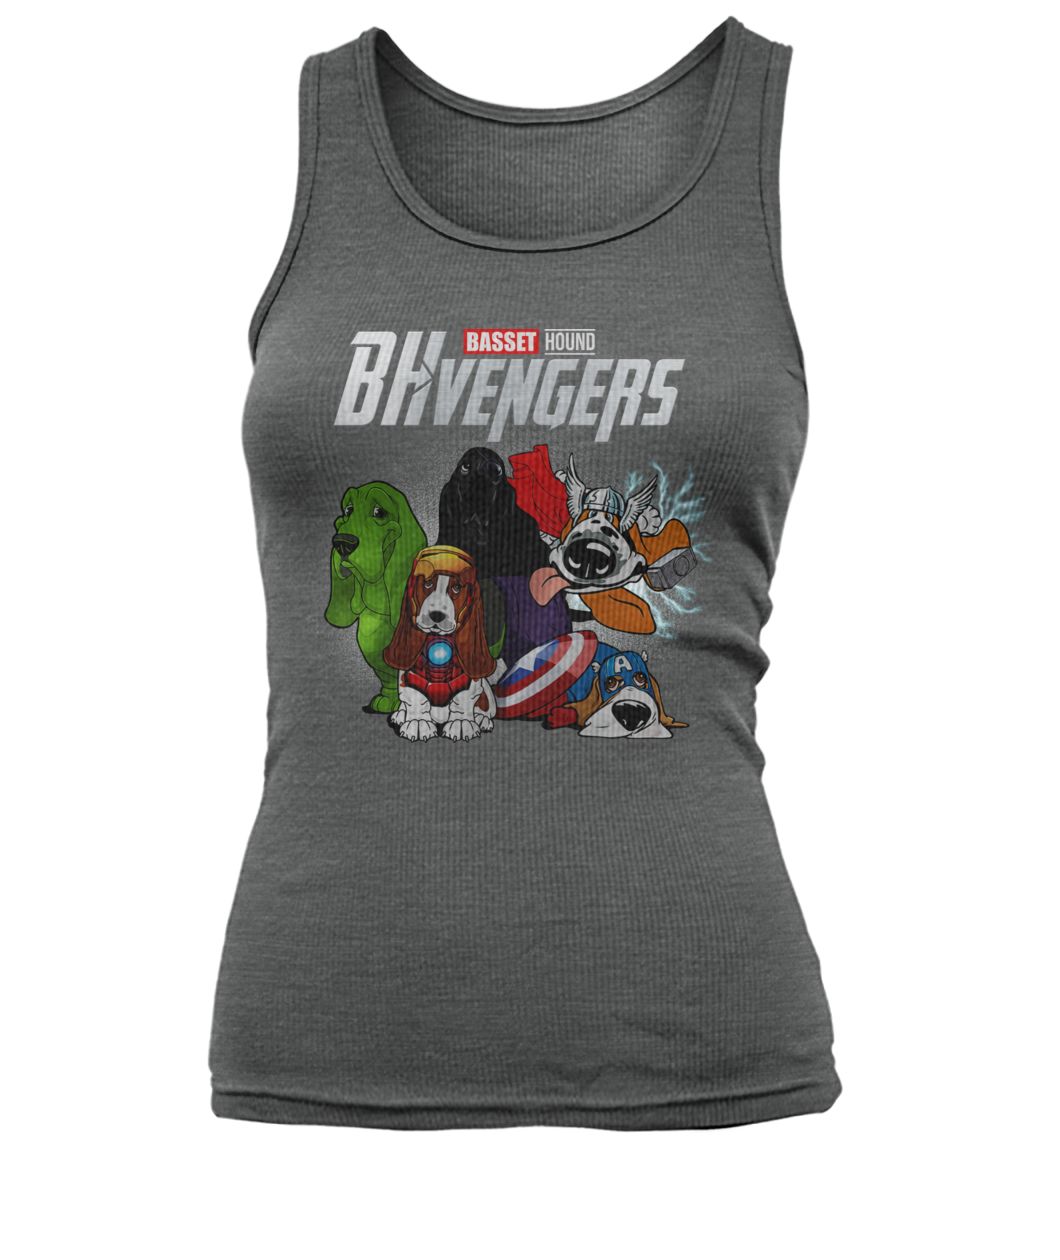 Marvel avengers endgame BHvengers basset hound women's tank top